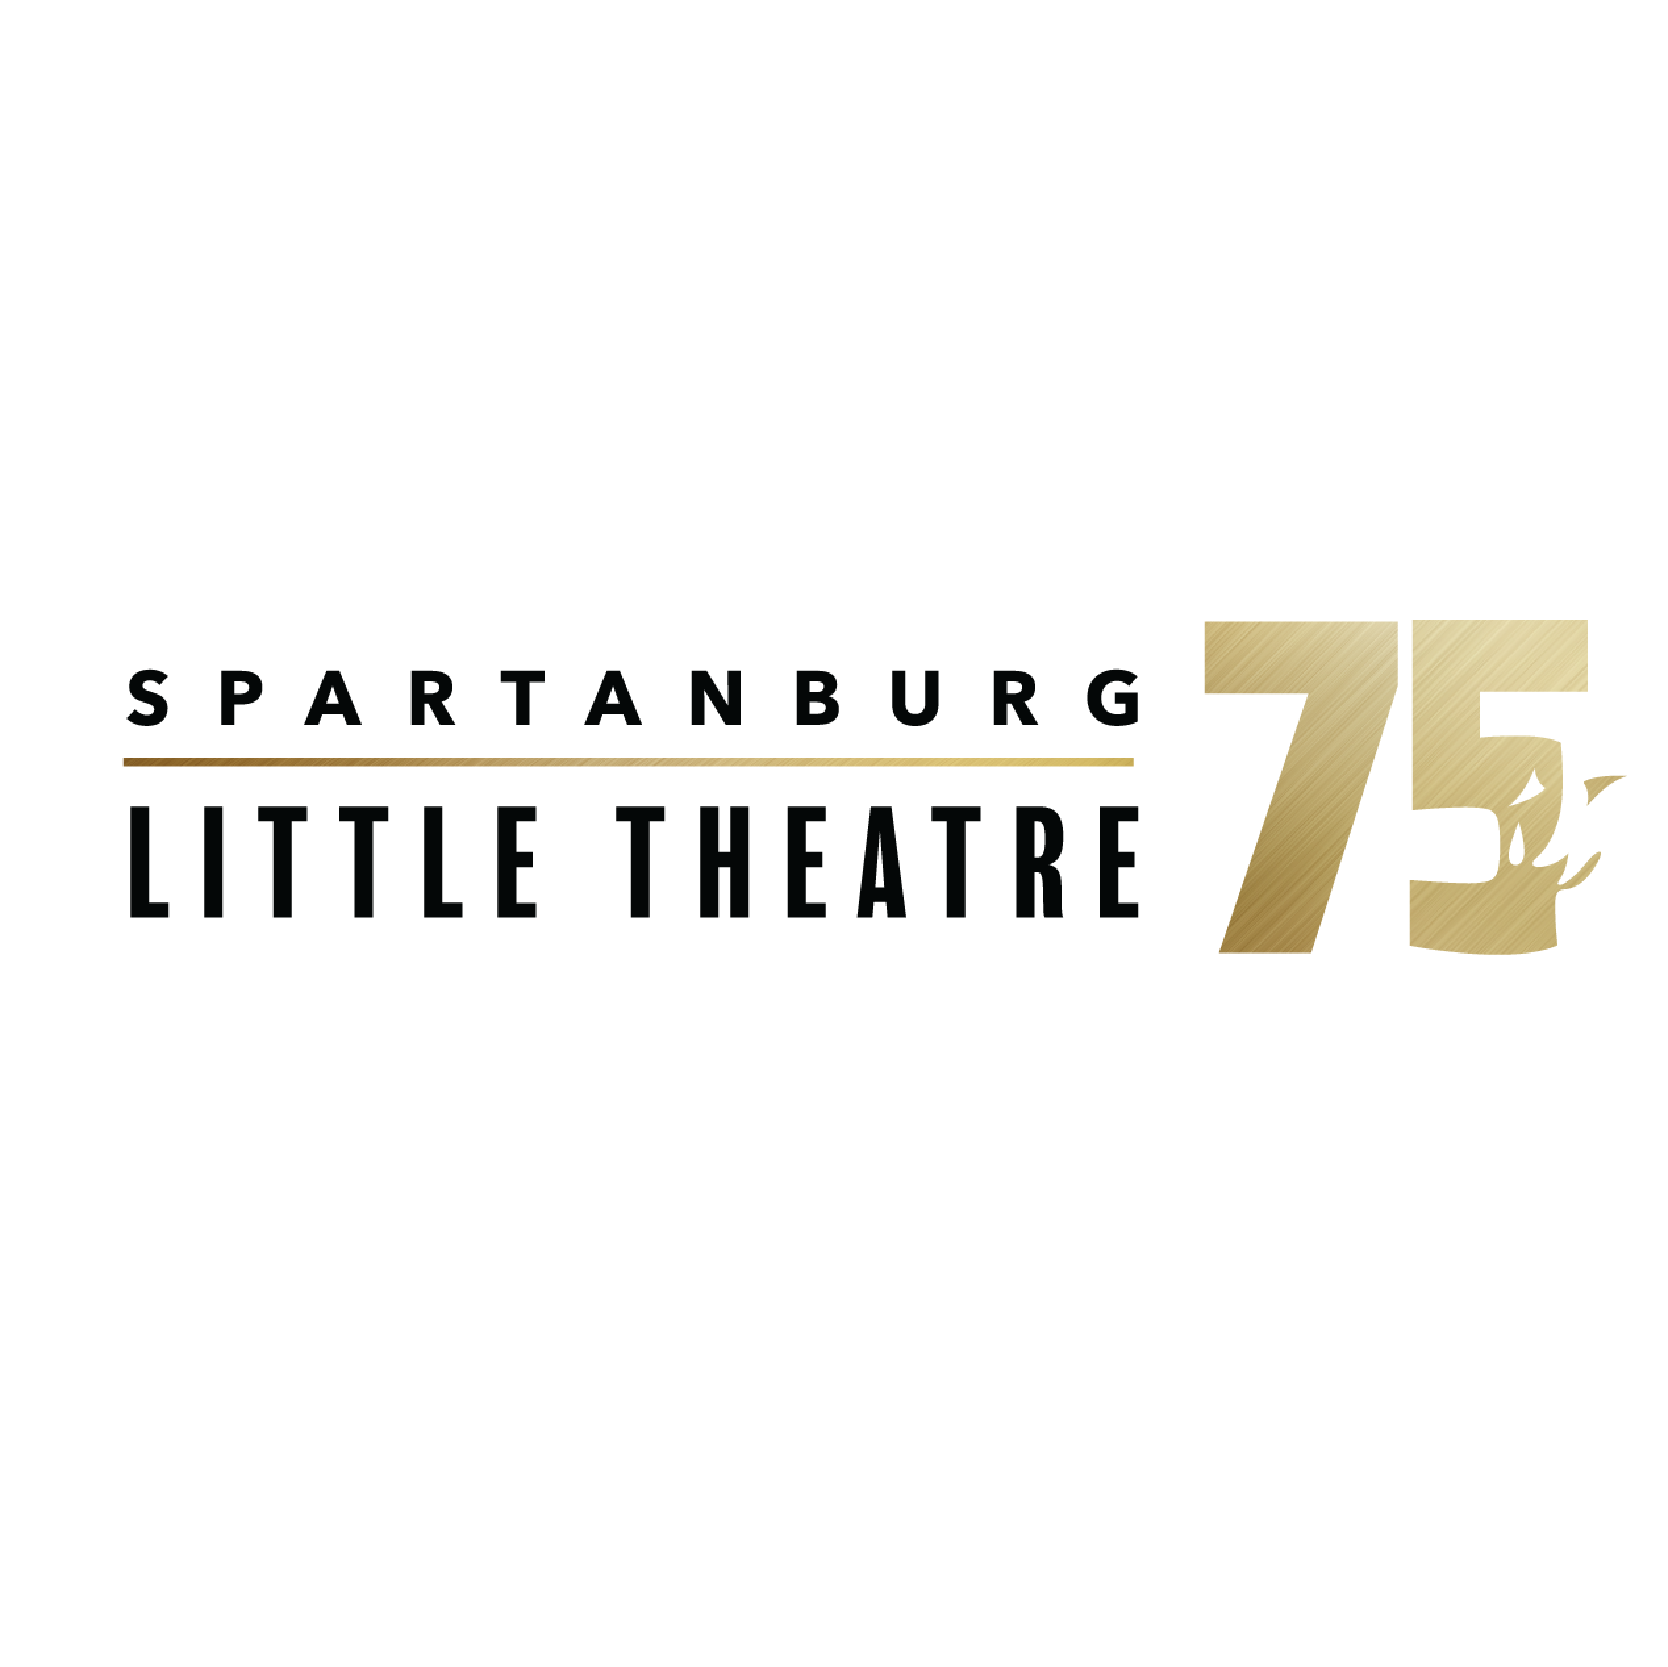 Spartanburg little theatre